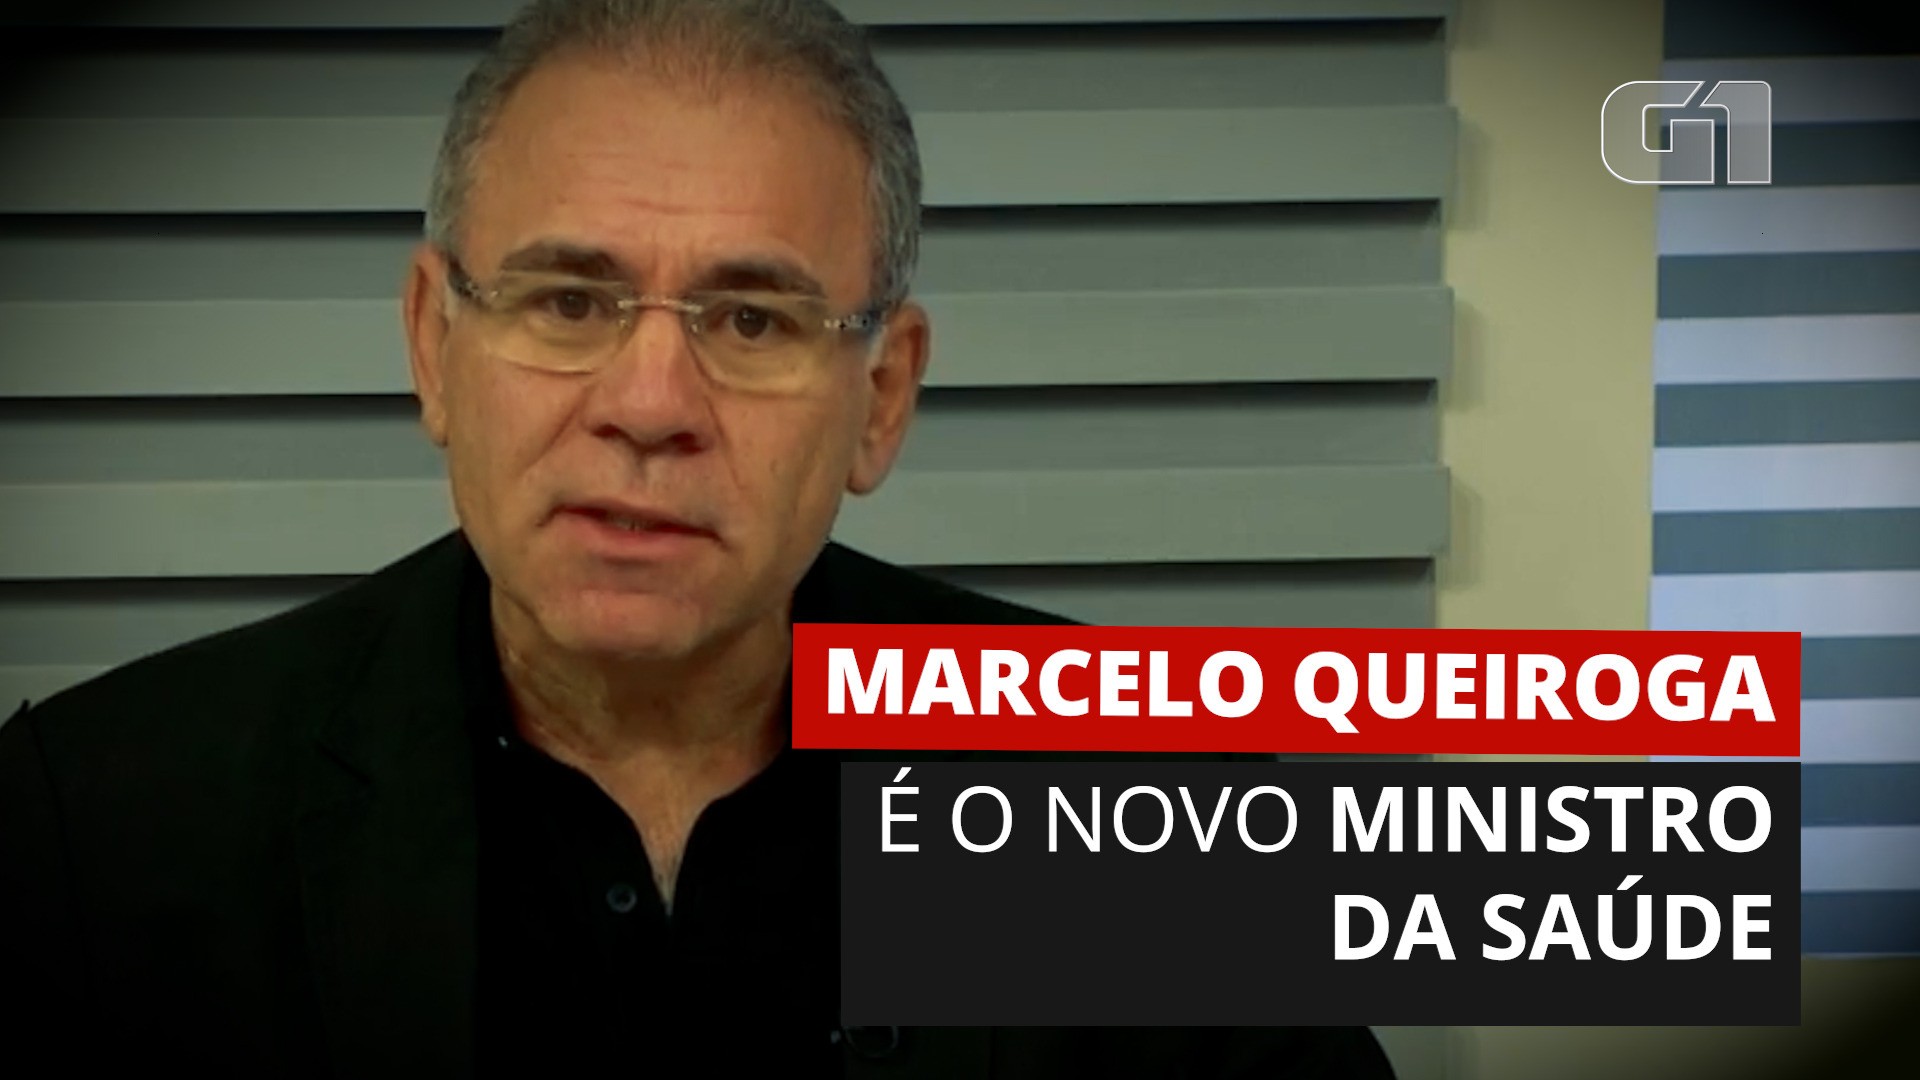 VÍDEOS novo ministro da saúde Marcelo Queiroga; veja repercussão